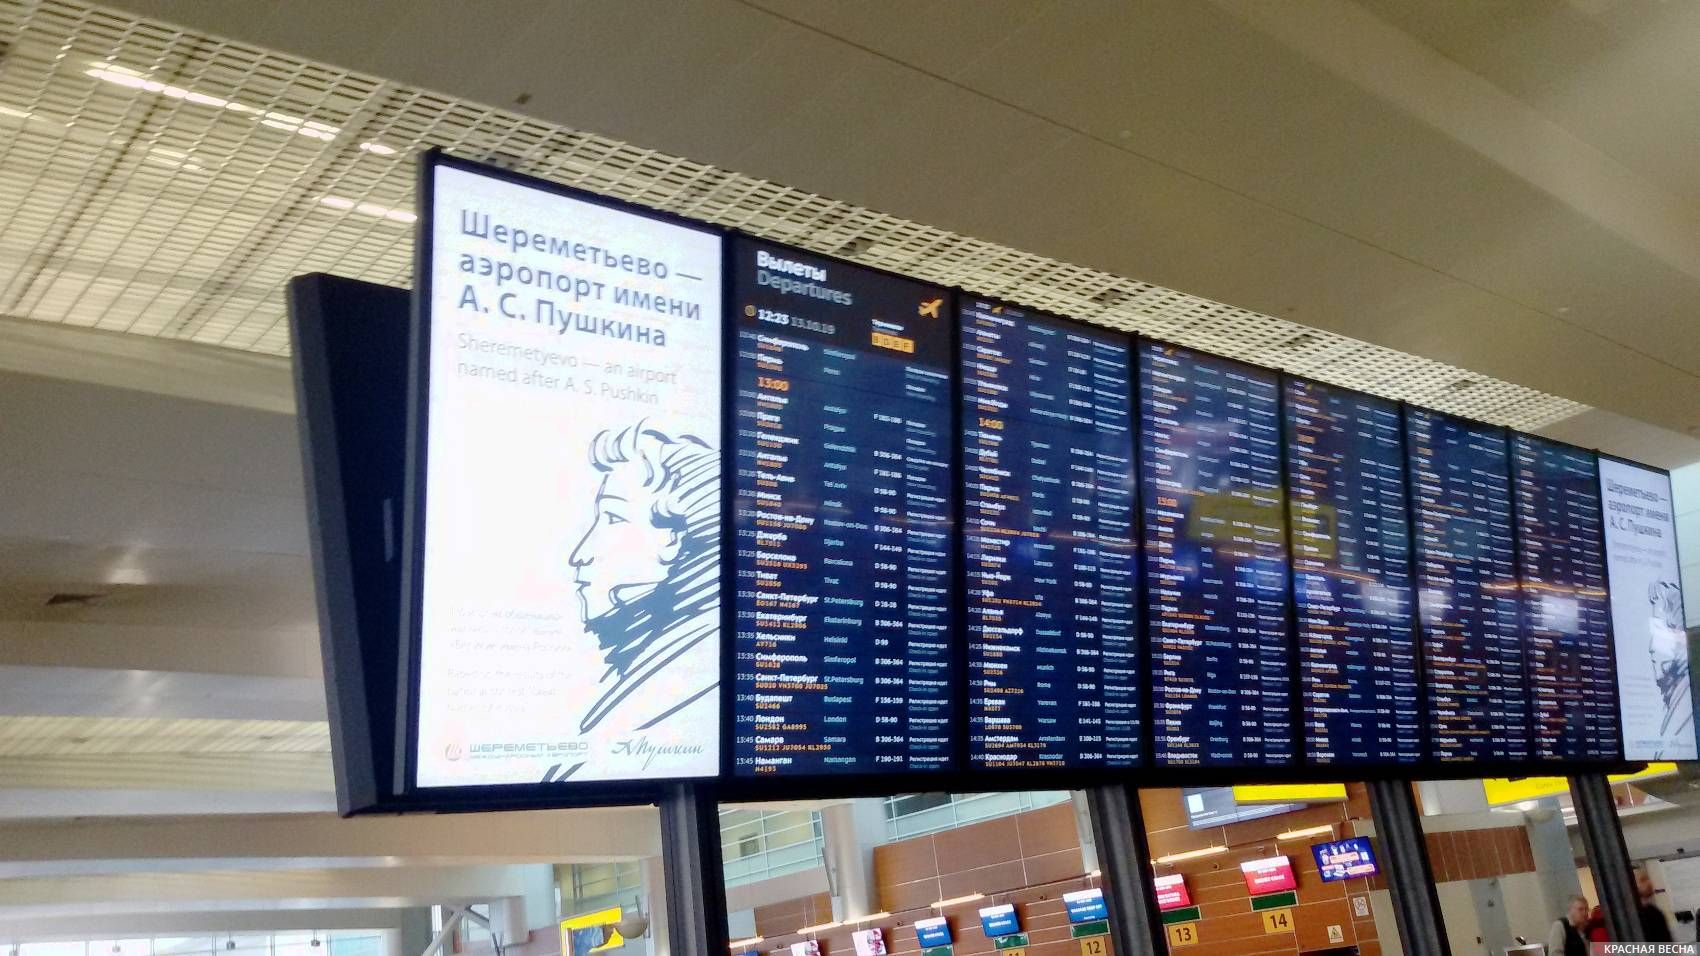 Табло шереметьево хабаровск москва. Информационное табло в аэропорту Шереметьево. Фото табло в аэропорту Шереметьево. Навигационное табло Шереметьево. Аэропорт Шереметьево табло.